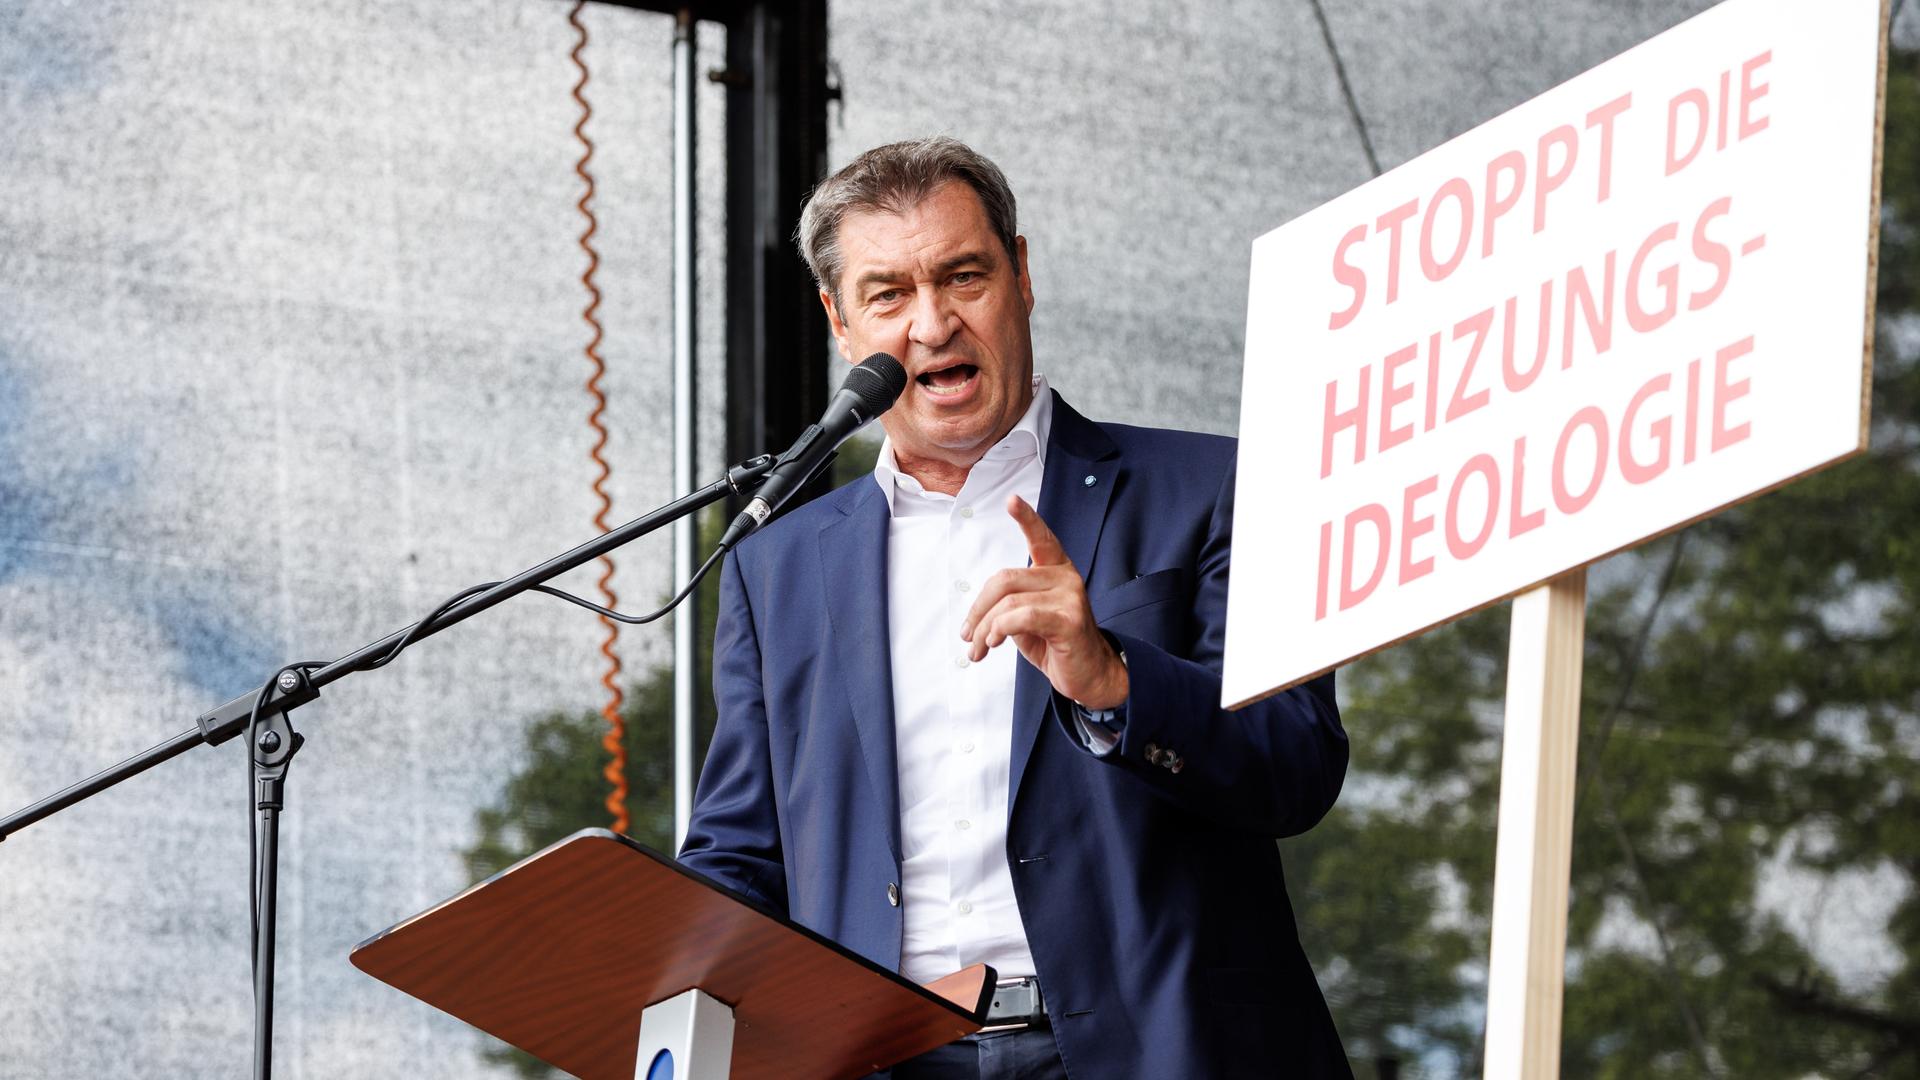 Markus Söder (CSU), Parteivorsitzender und Ministerpräsident von Bayern, spricht bei einer Demonstration gegen die Klima-Politik der Ampelregierung unter dem Motto "Stoppt die Heizungsideologie".